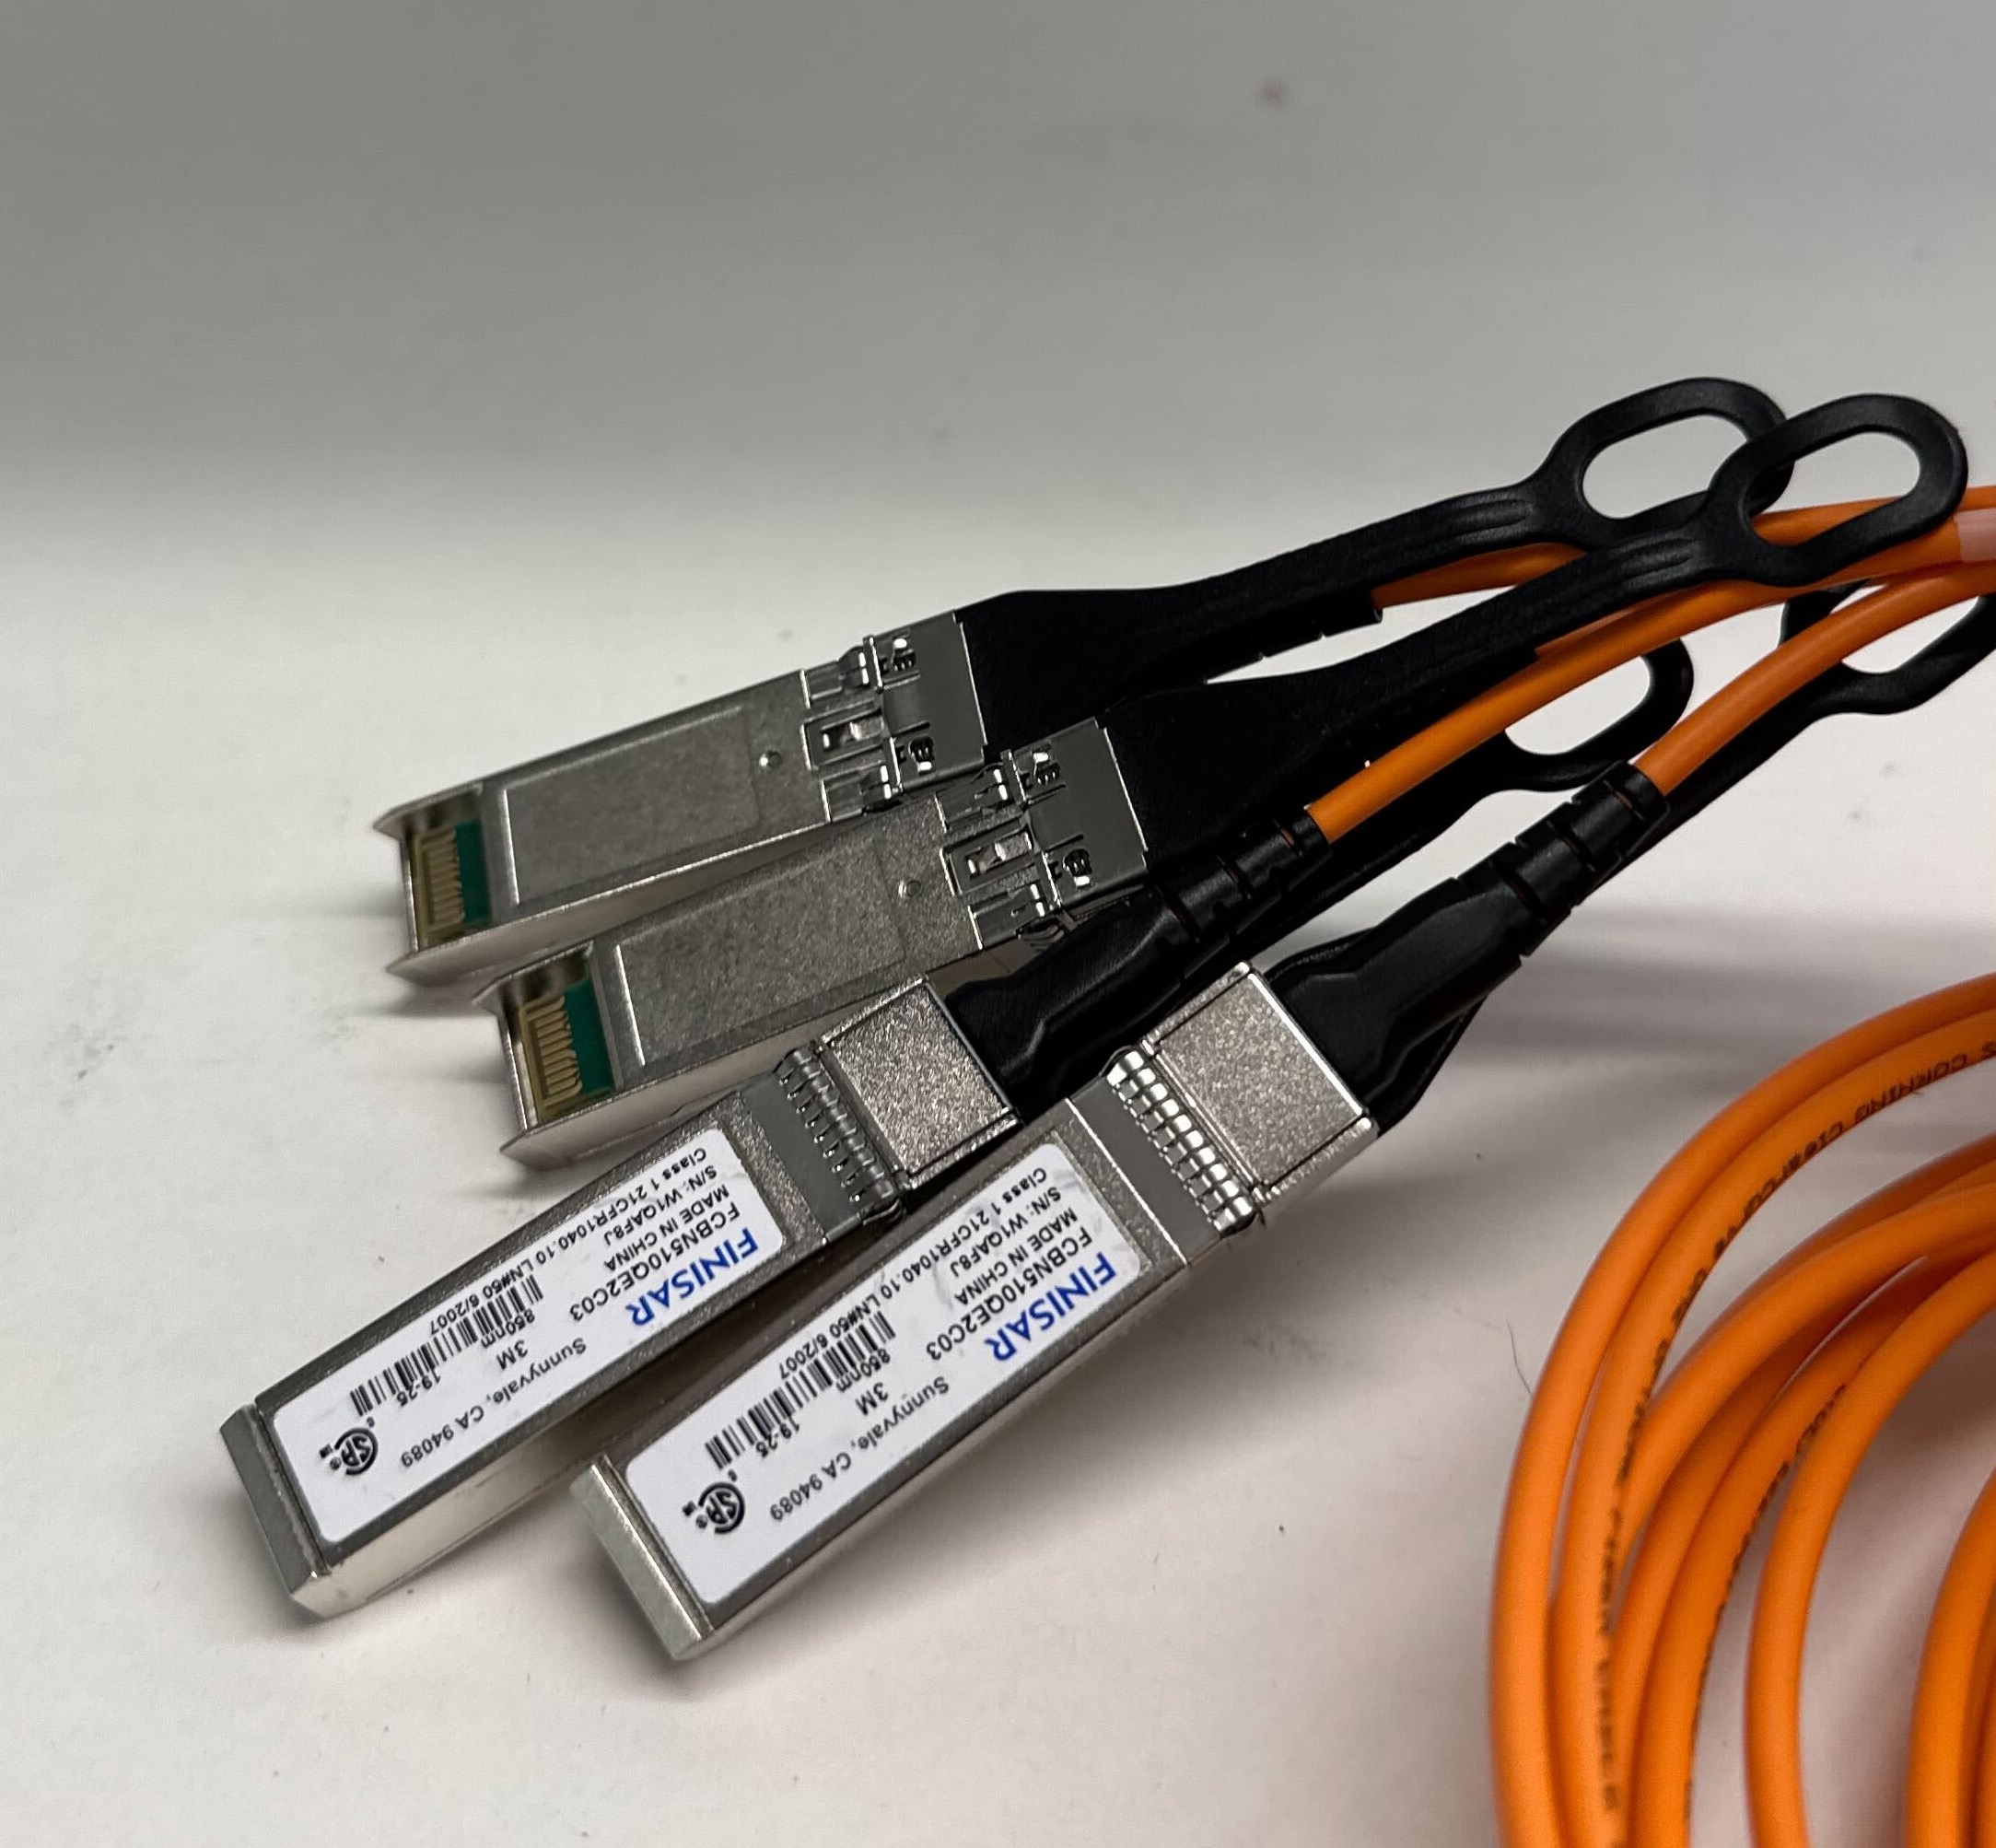 一张 QSFP 电缆的图像，显示了 4 根分支电缆。